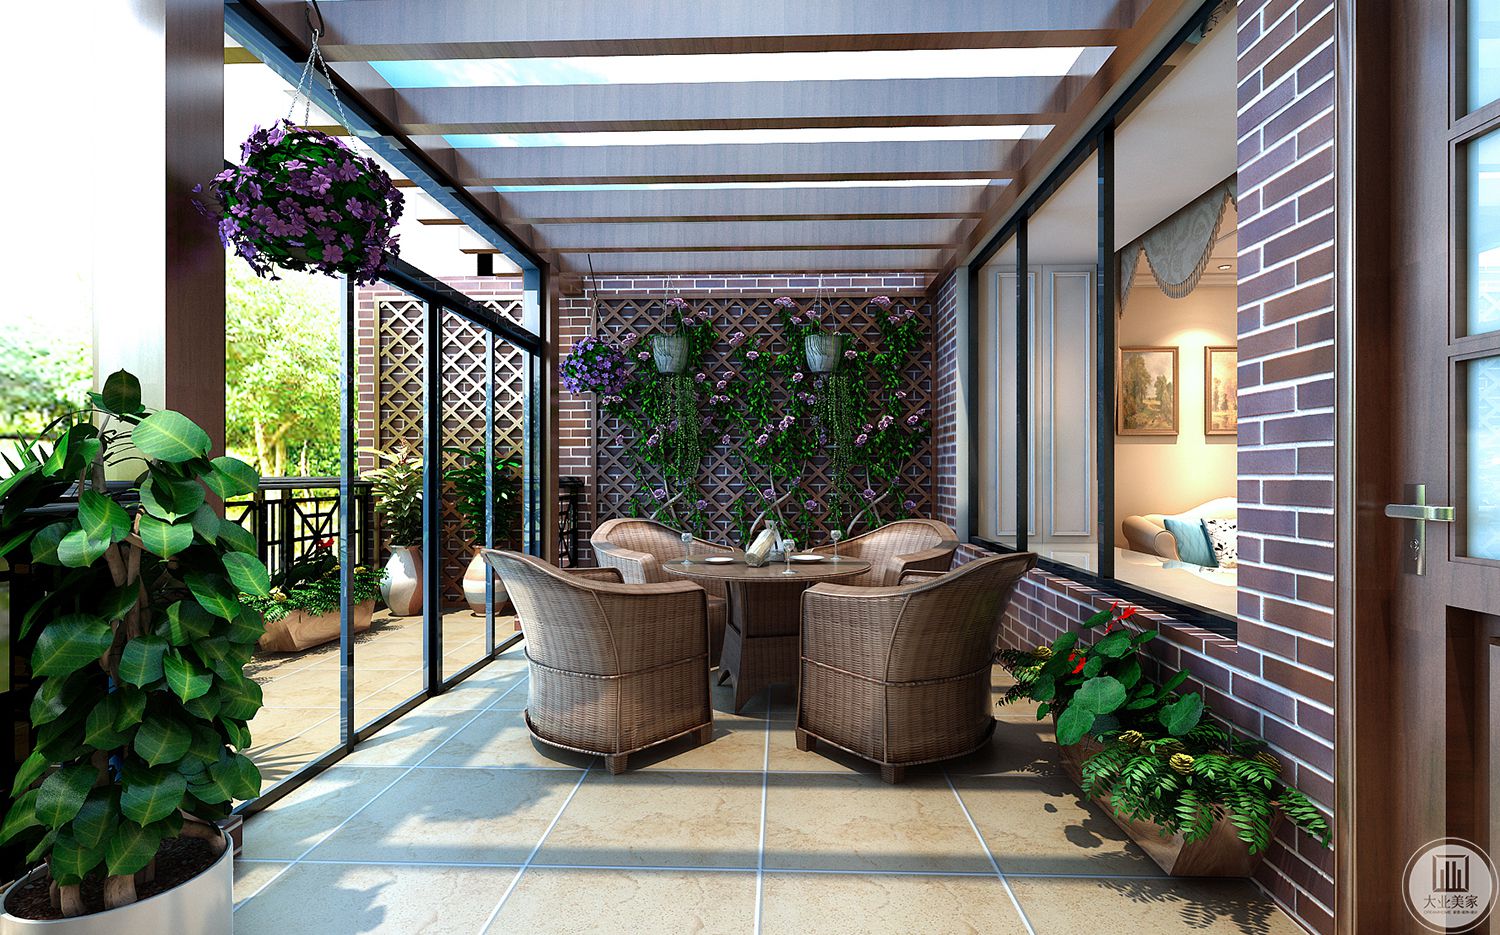 阳台采用木质桌椅和浅灰色地砖，为家庭营造田园诗般的氛围。绿色植物与户外相互映衬，给人一种清新自然的感觉。